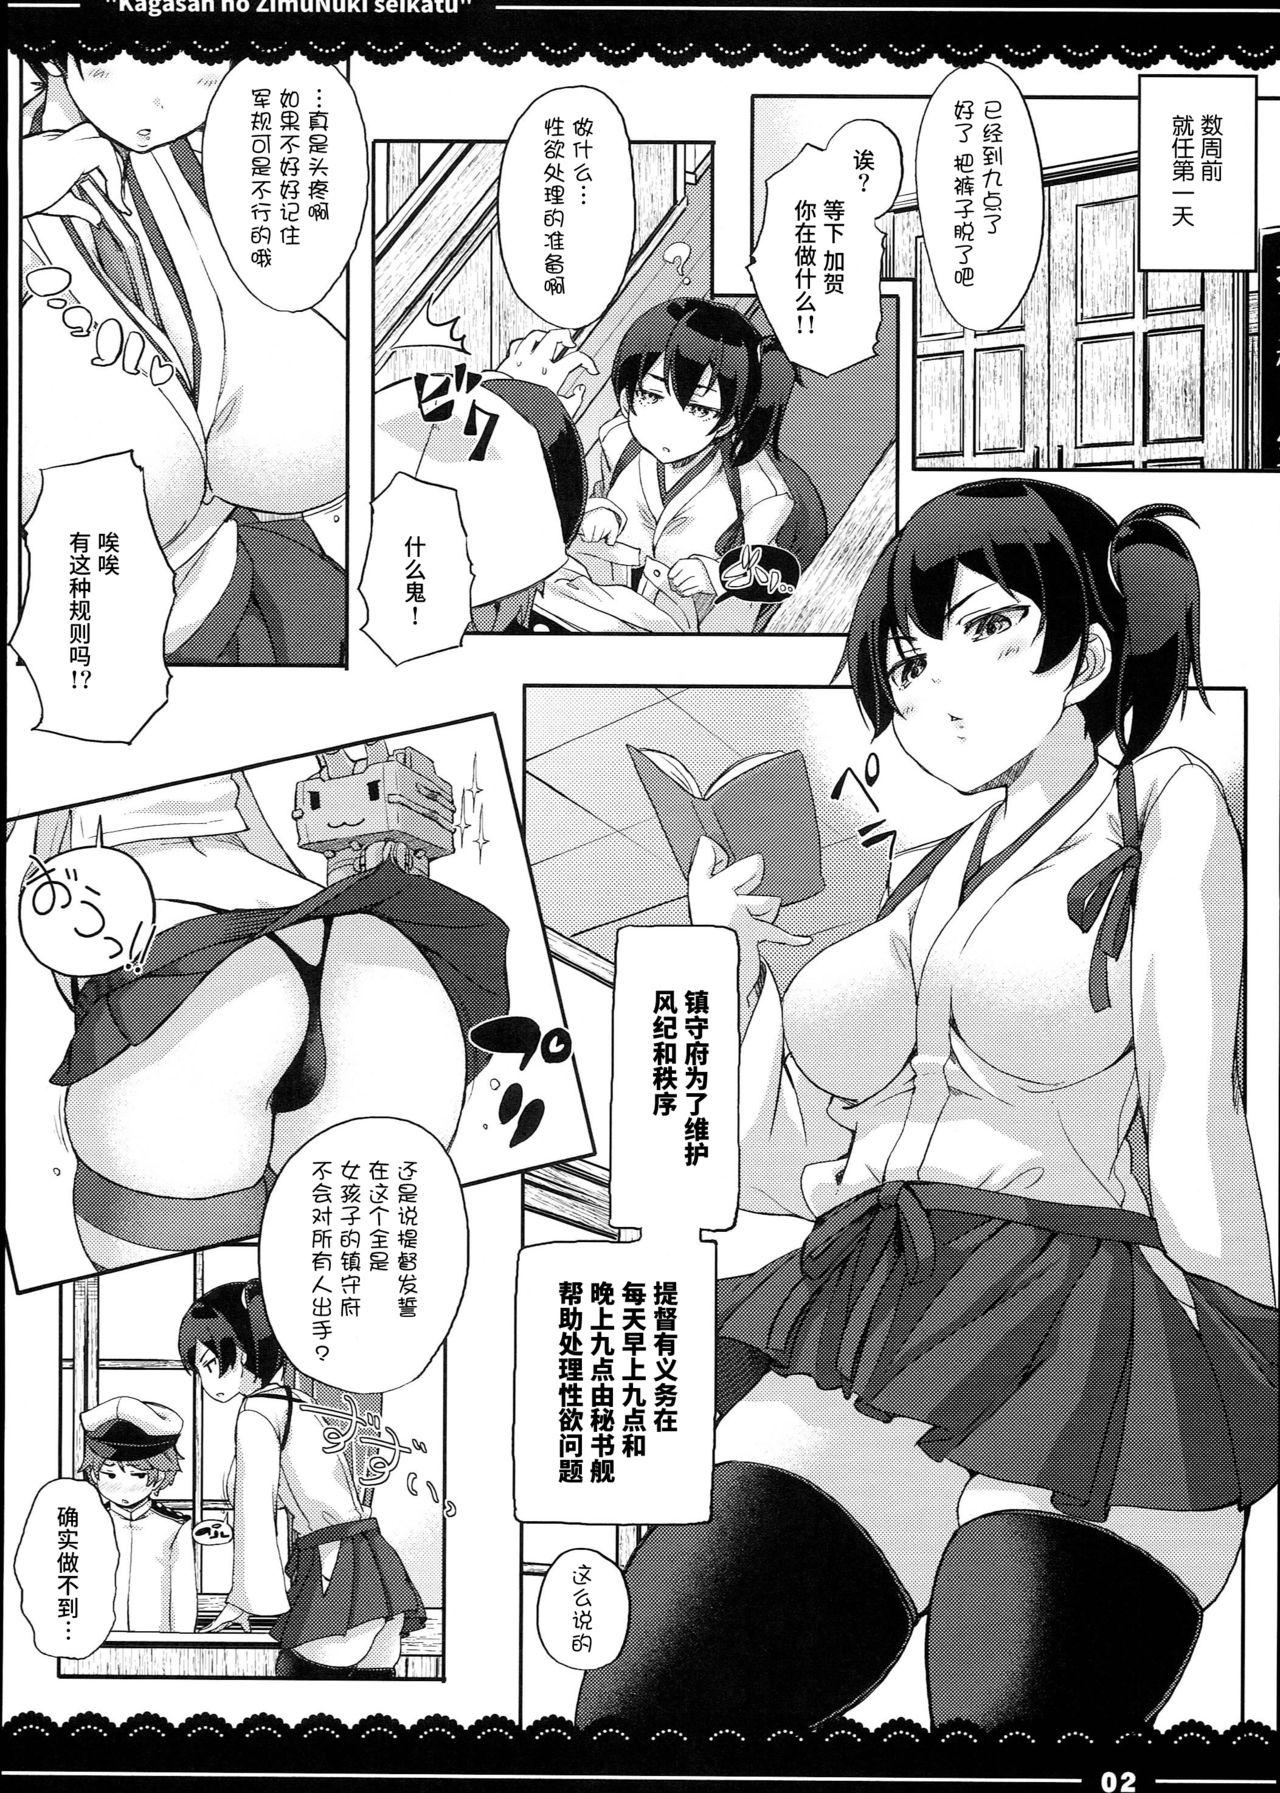 Hot Girl Fuck Kaga-san no Jimunuki Seikatsu - Kantai collection Bigboobs - Page 4